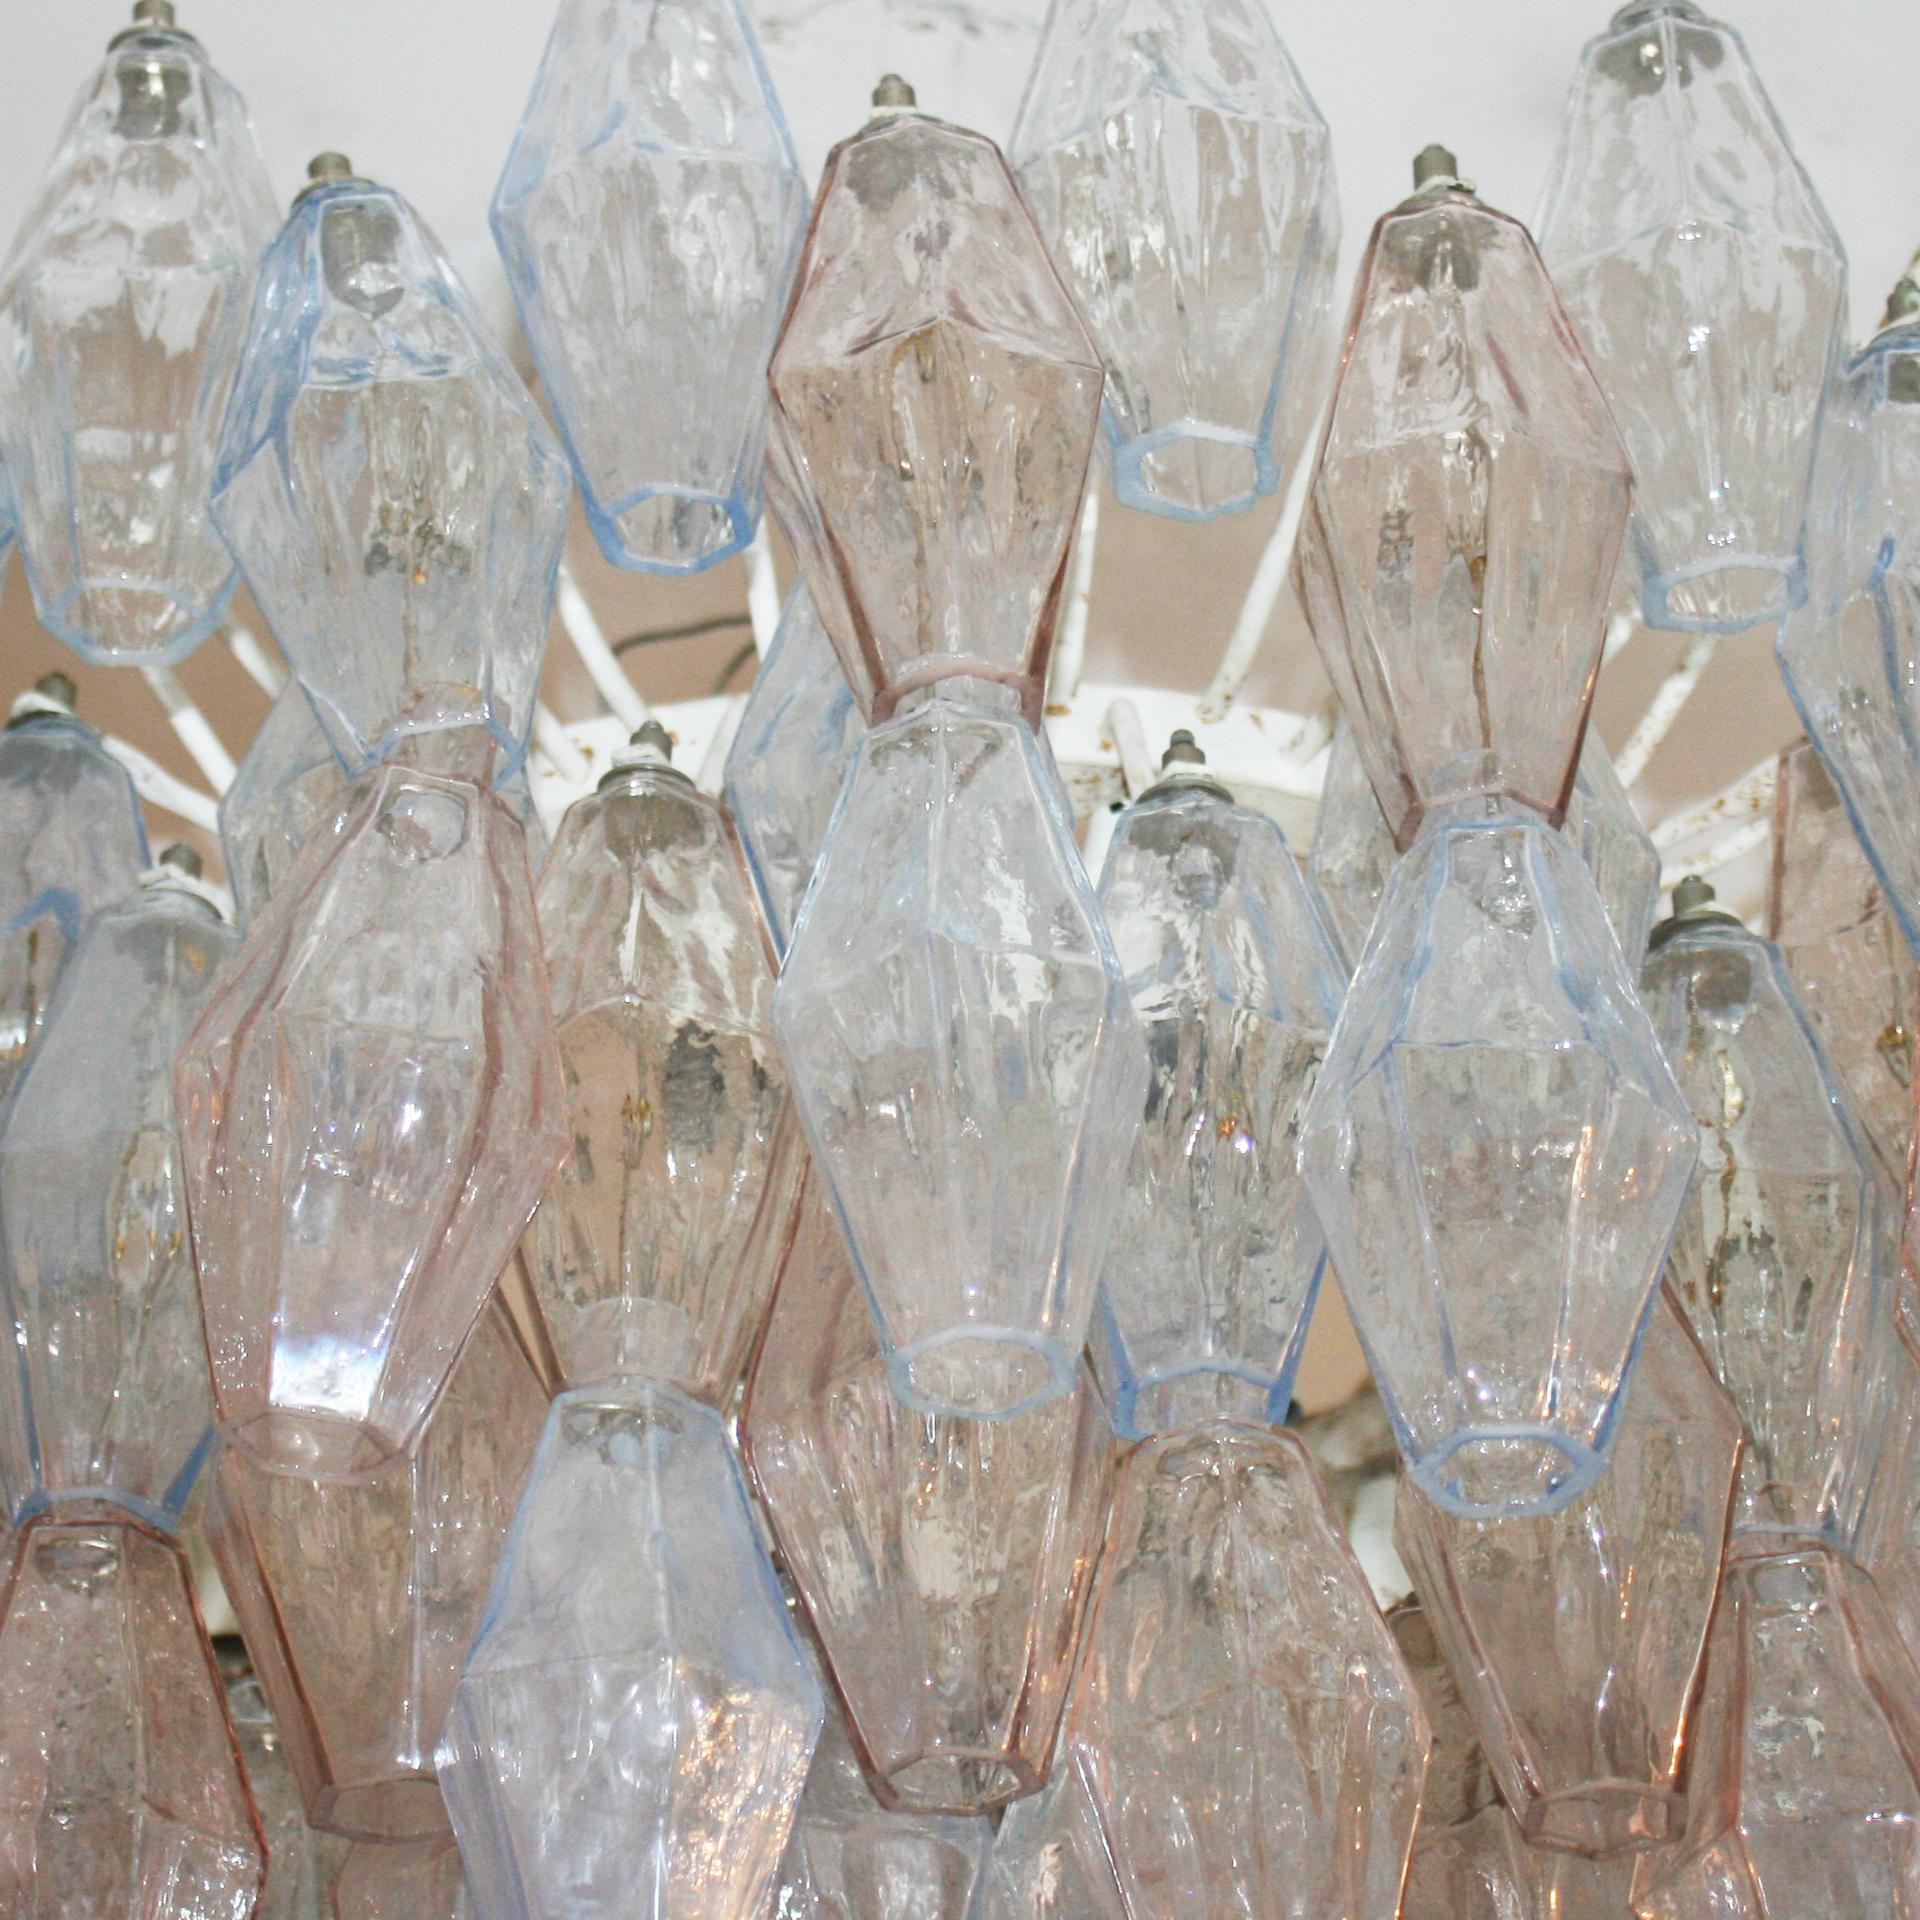 Glass ‘Poliedri’ Italian Lamp Designed by Carlo Scarpa and Edited by Venini